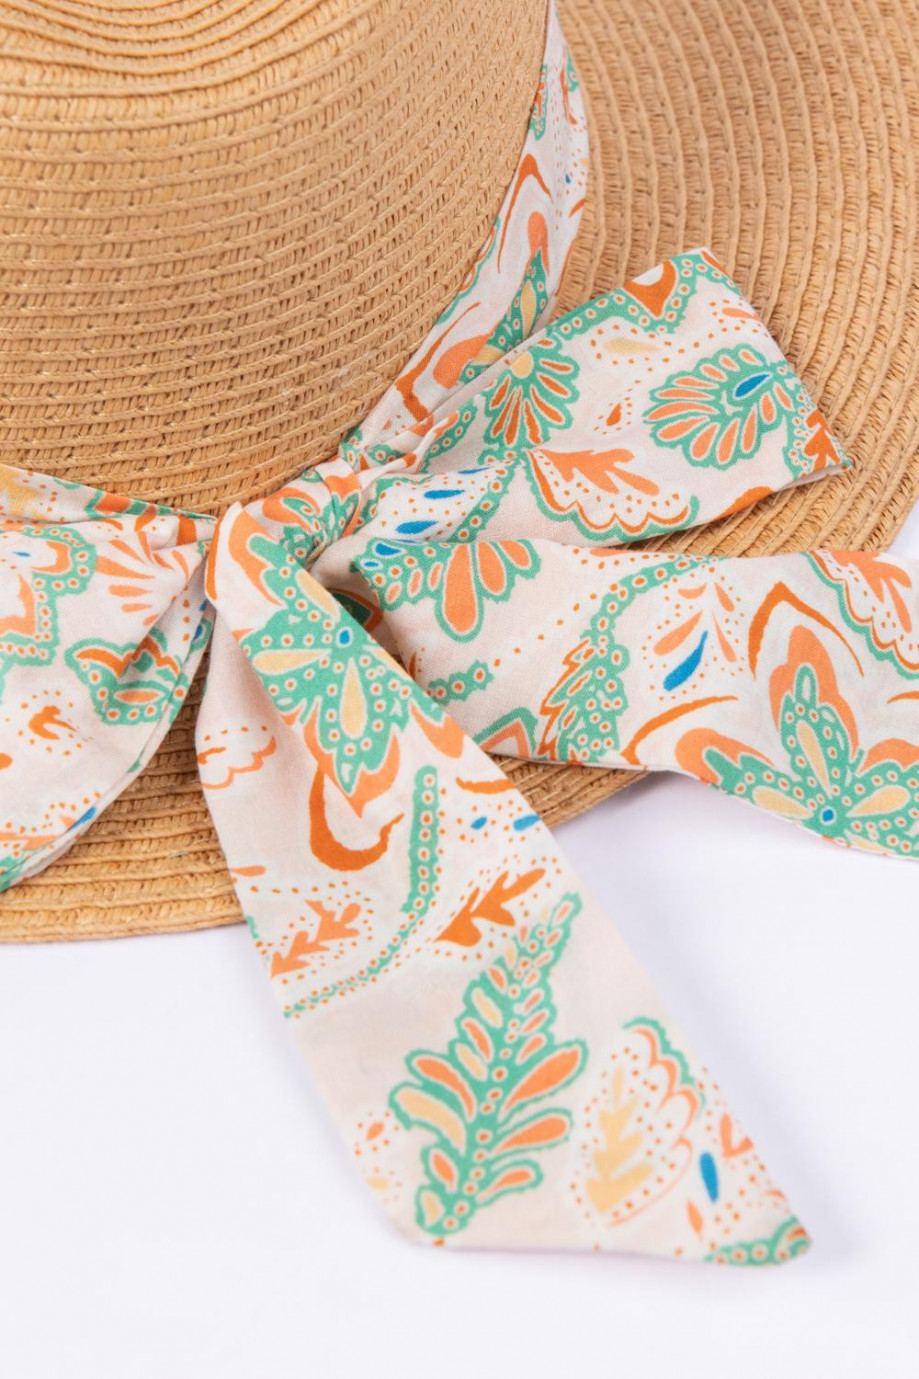 Sombrero tejido kaky claro con cinta decorativa colorida con anudado